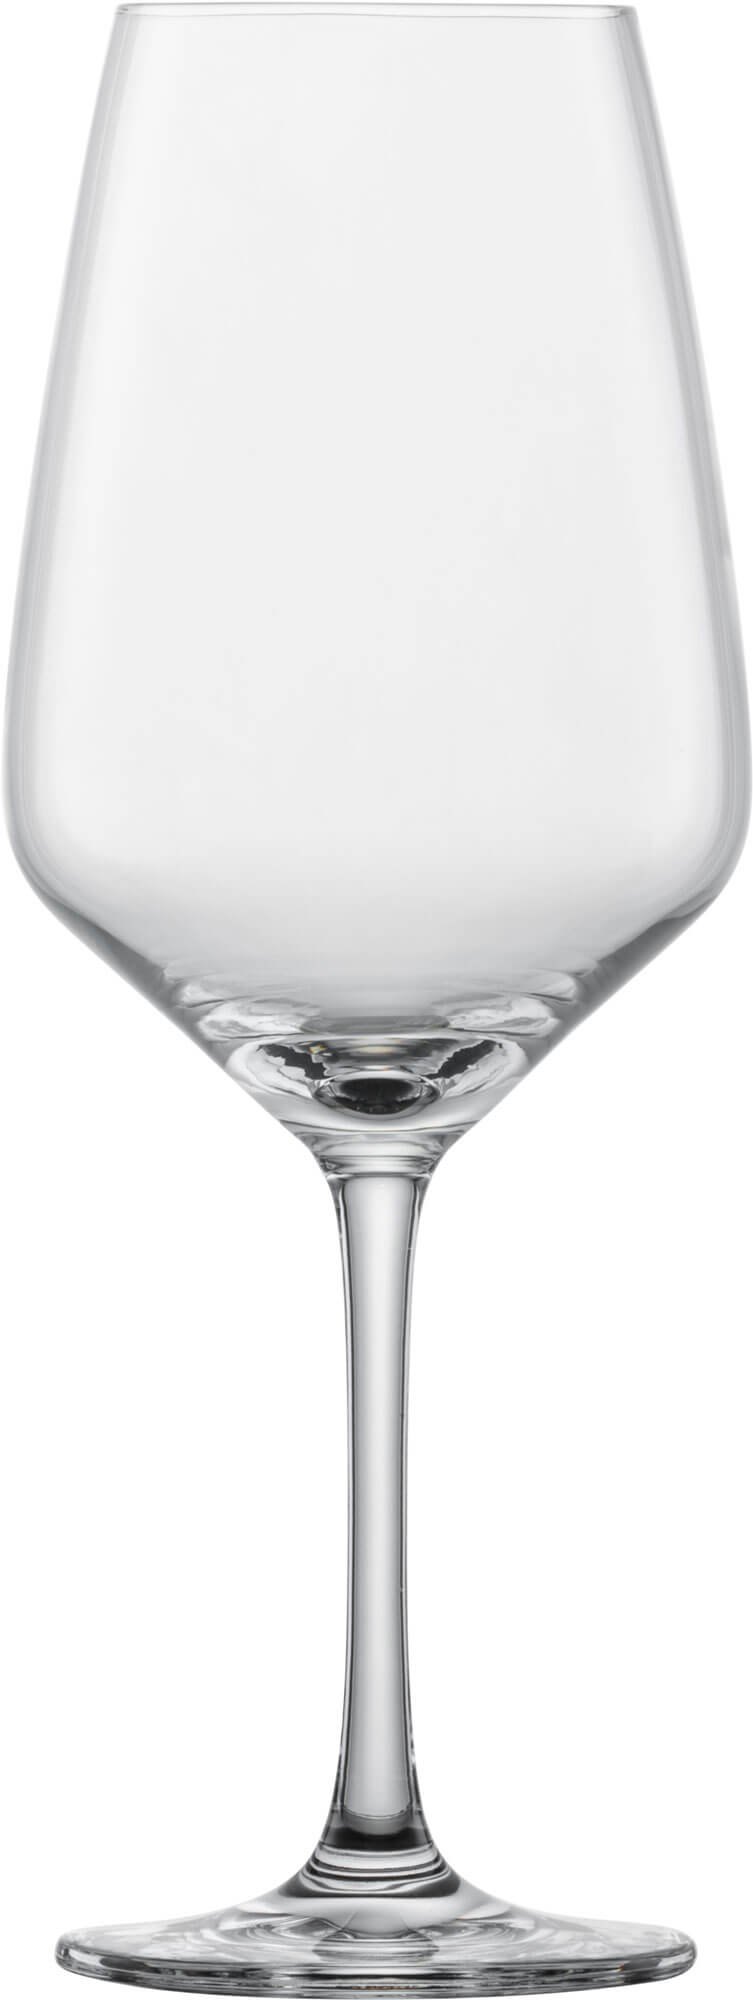 Rotweinglas Taste, Schott Zwiesel - 497ml (1 Stk.)